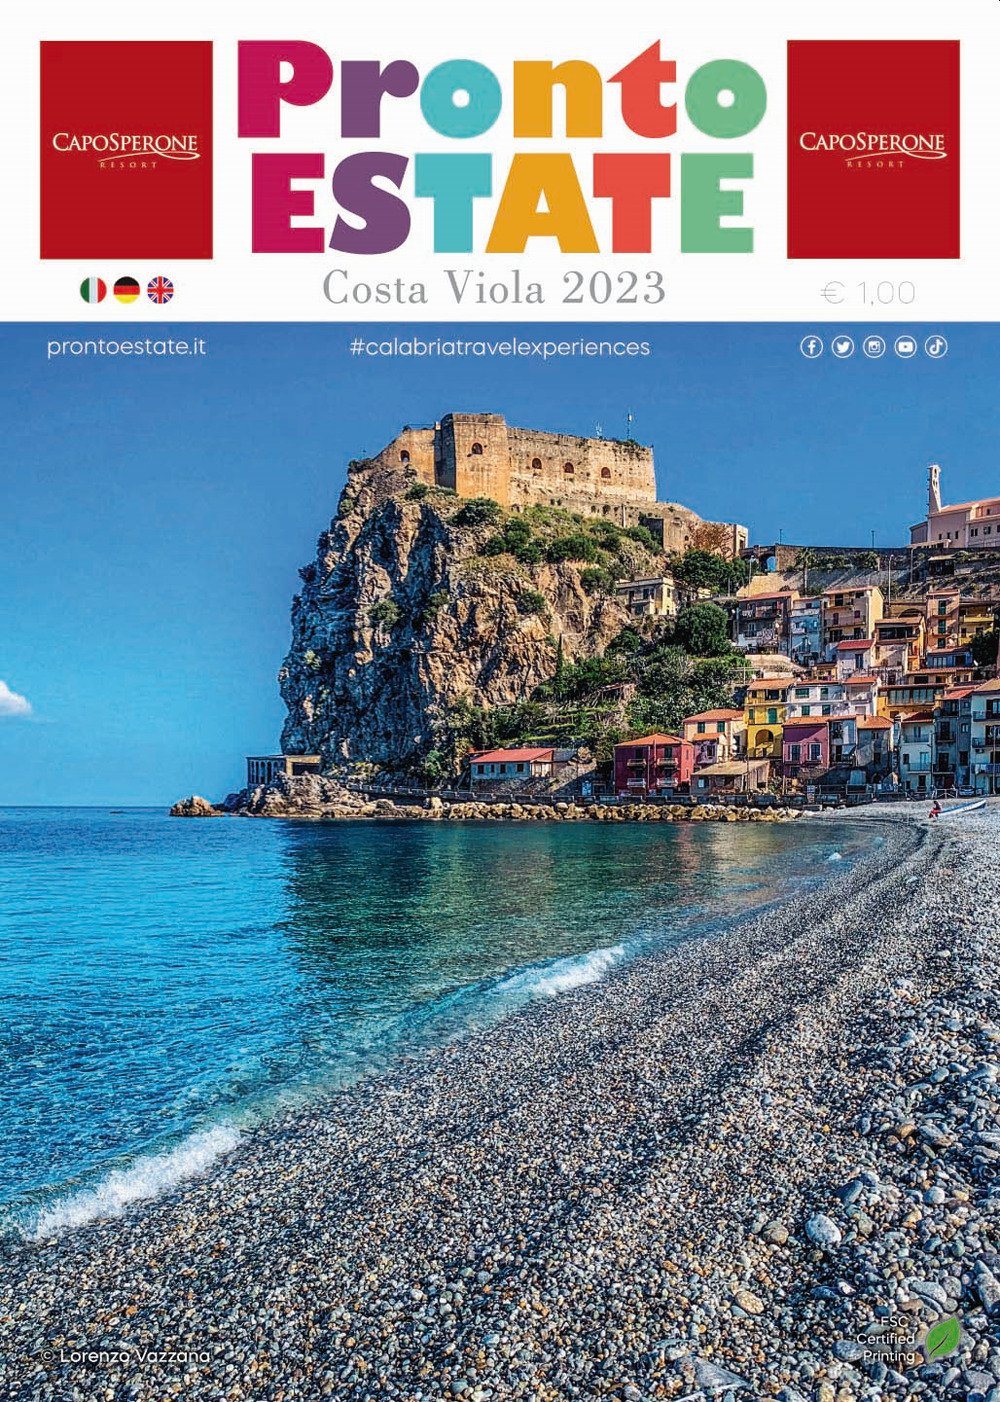 Pronto estate «Costa Viola» 2023